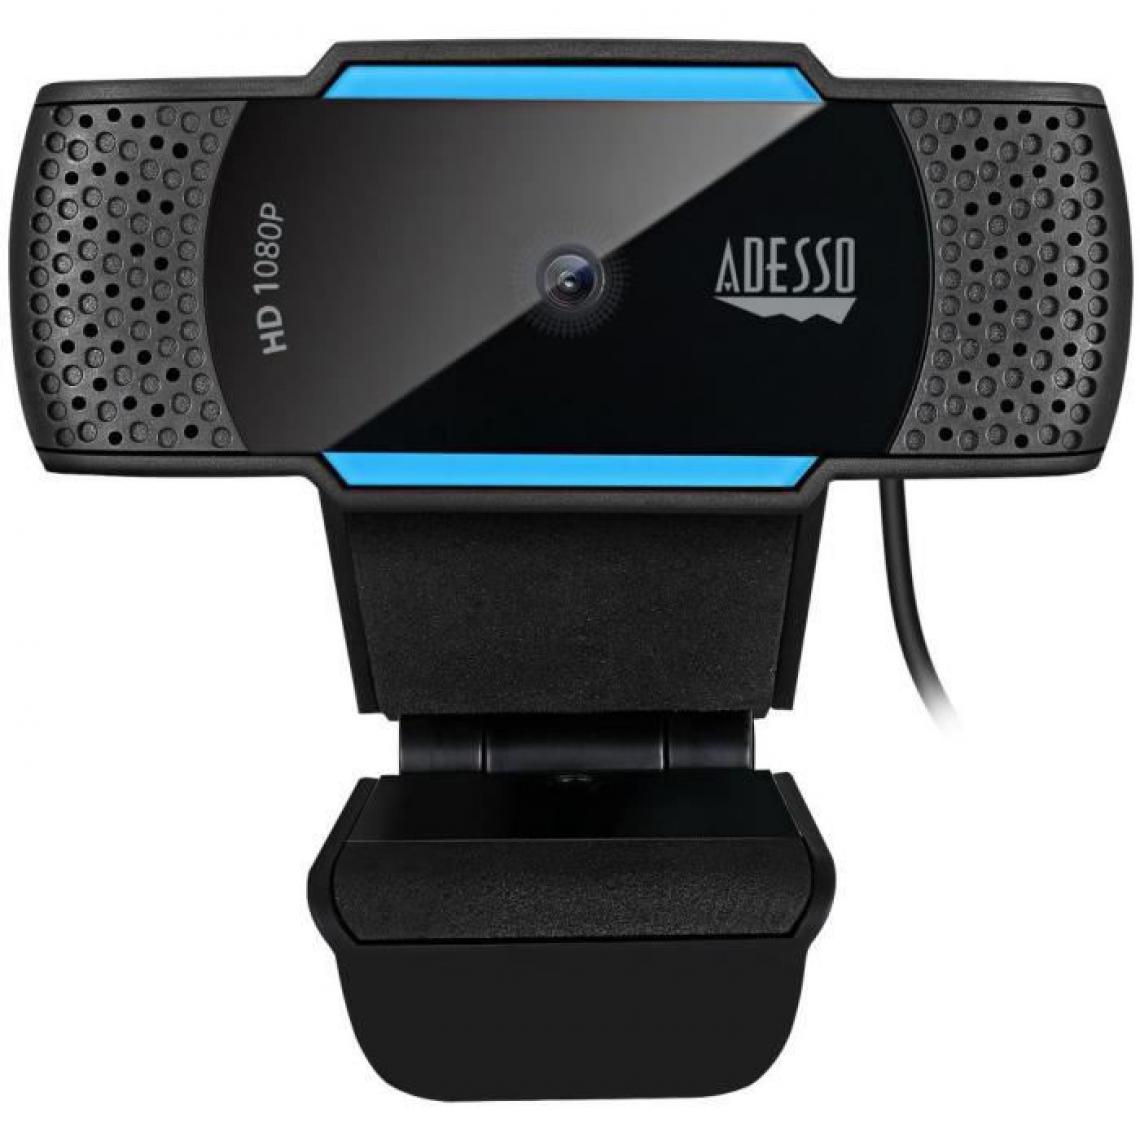 Adesso - ADESSO Webcam Cybertrack H5 - Webcam